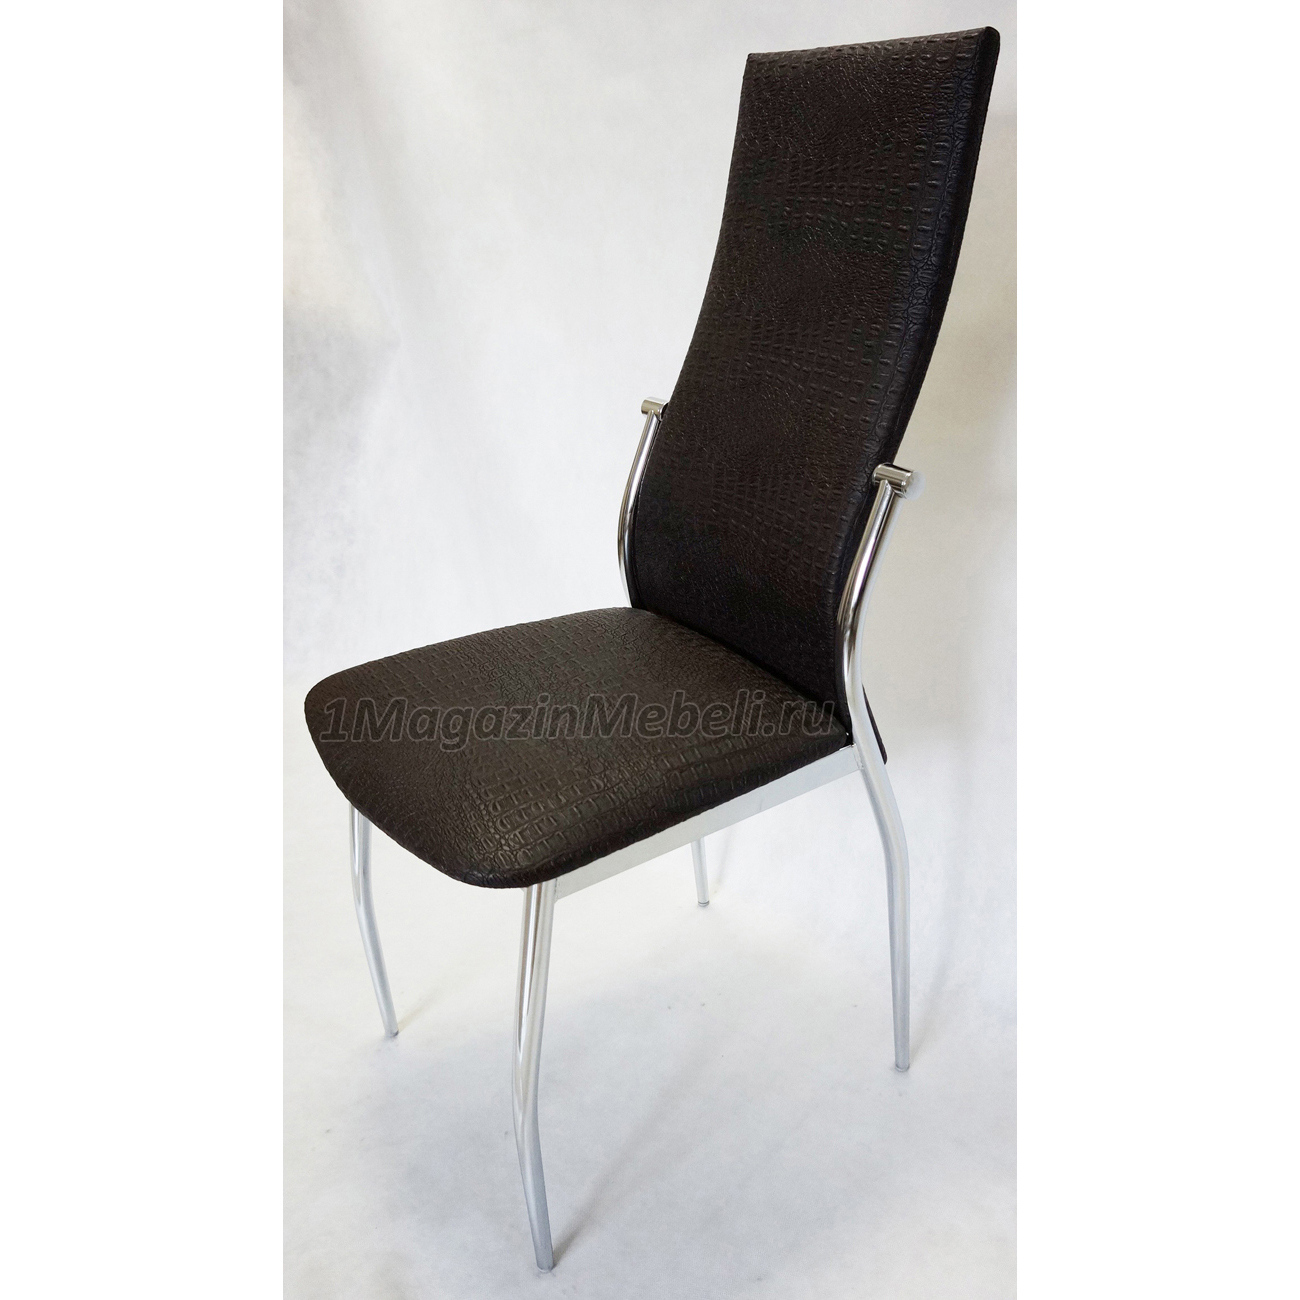 Комфортный стул для кухни, темно-коричневый крокодил (арт. М3215)